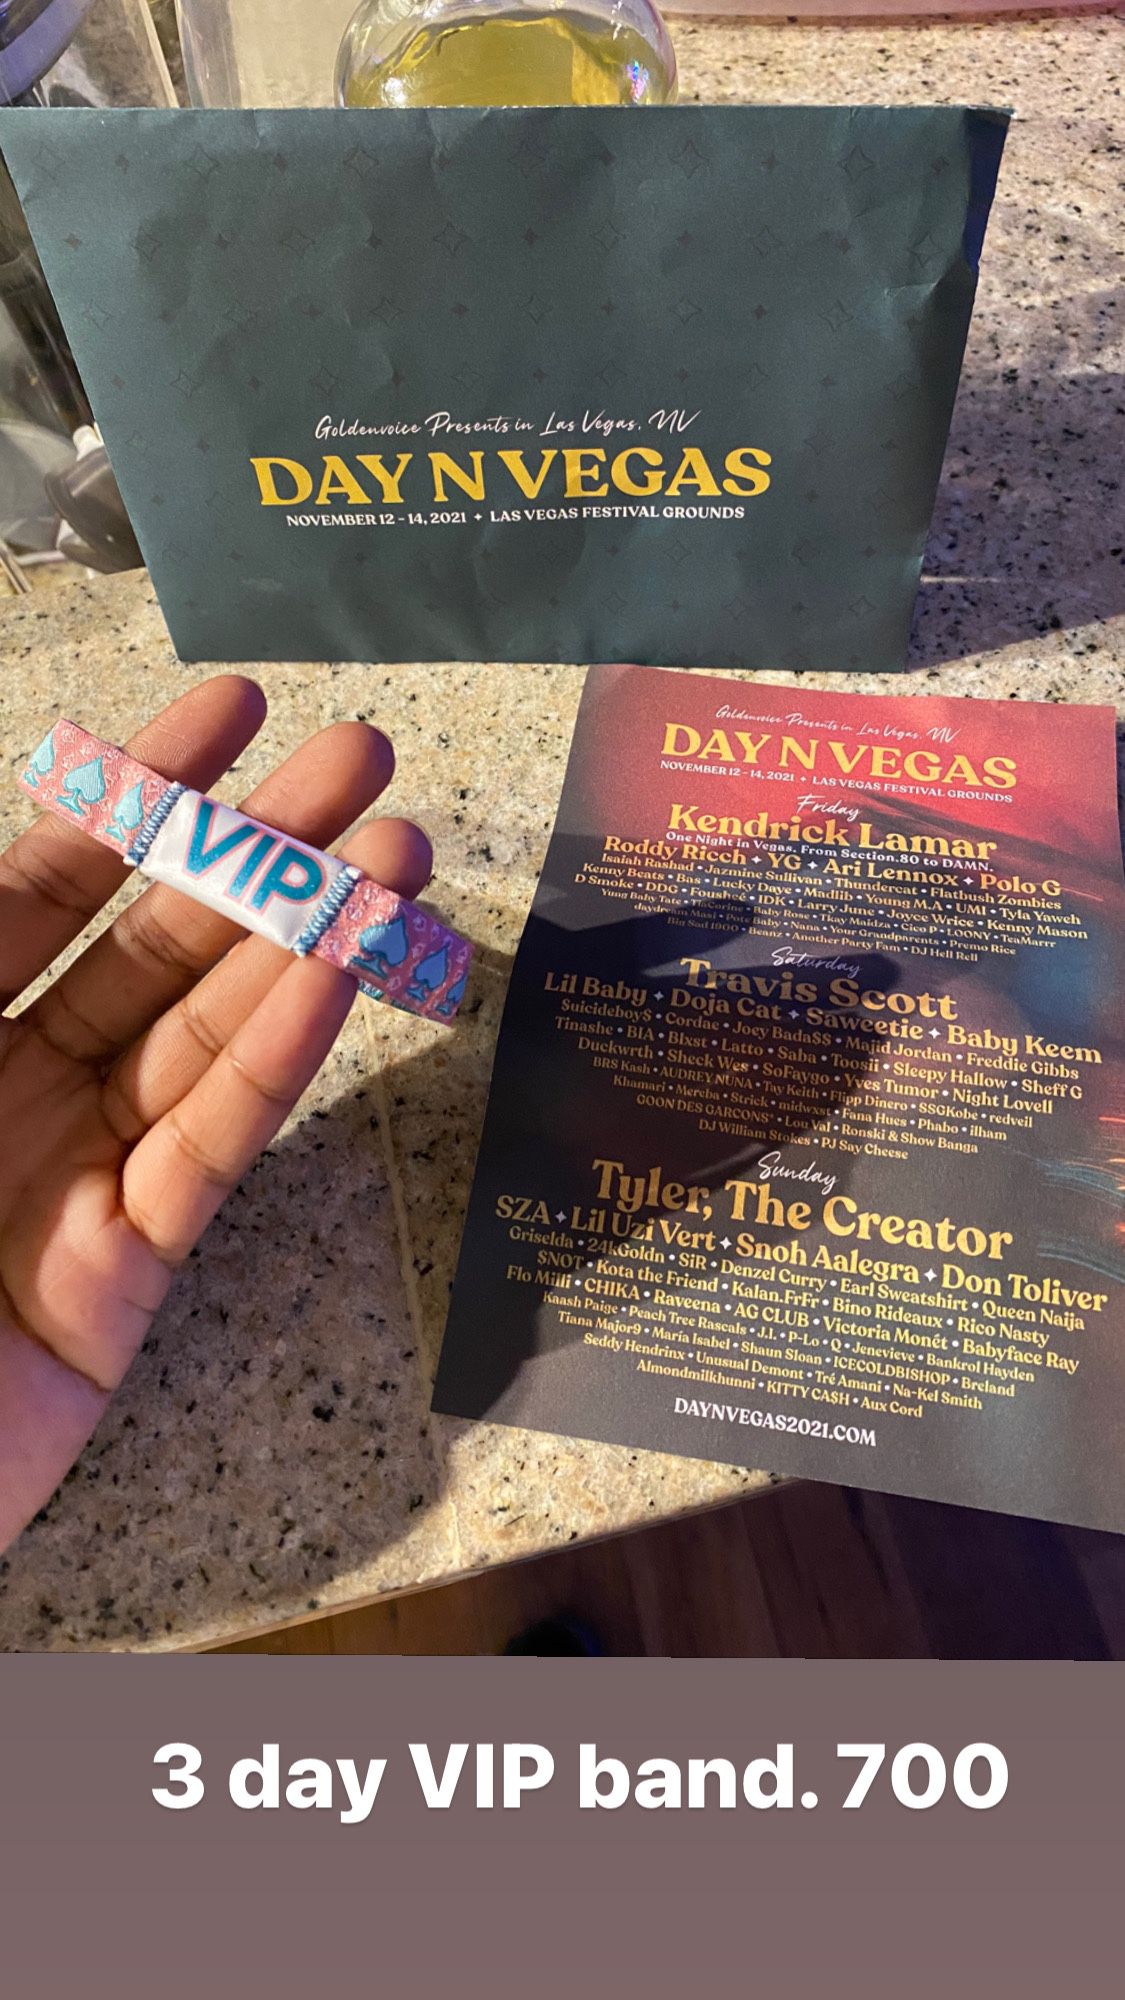 Day N Vegas VIP band